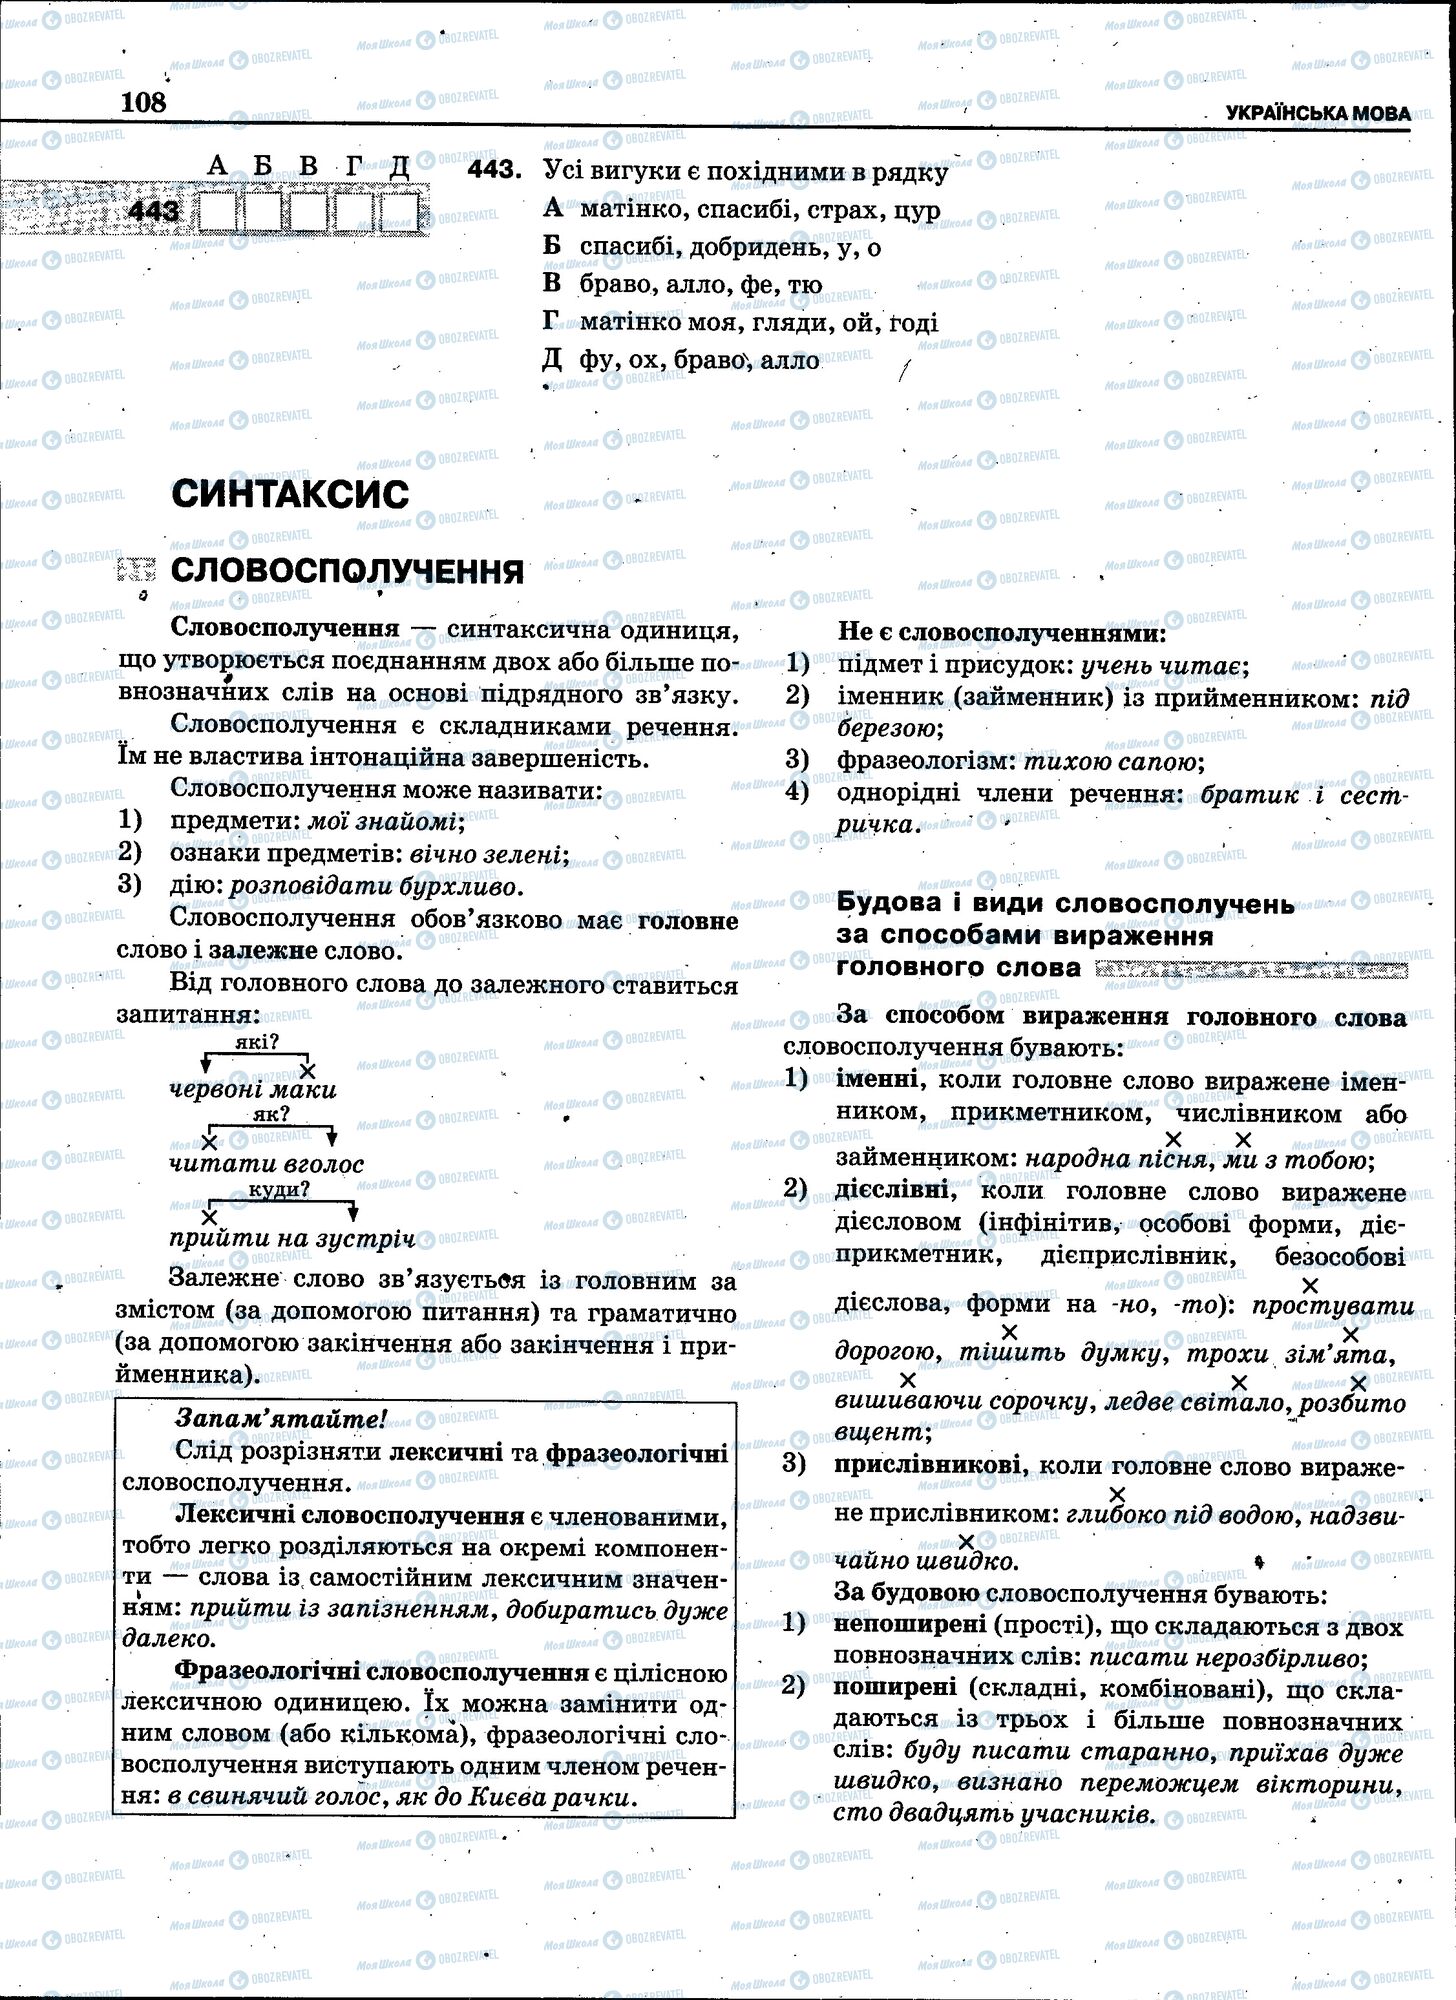 ЗНО Укр мова 11 класс страница 106